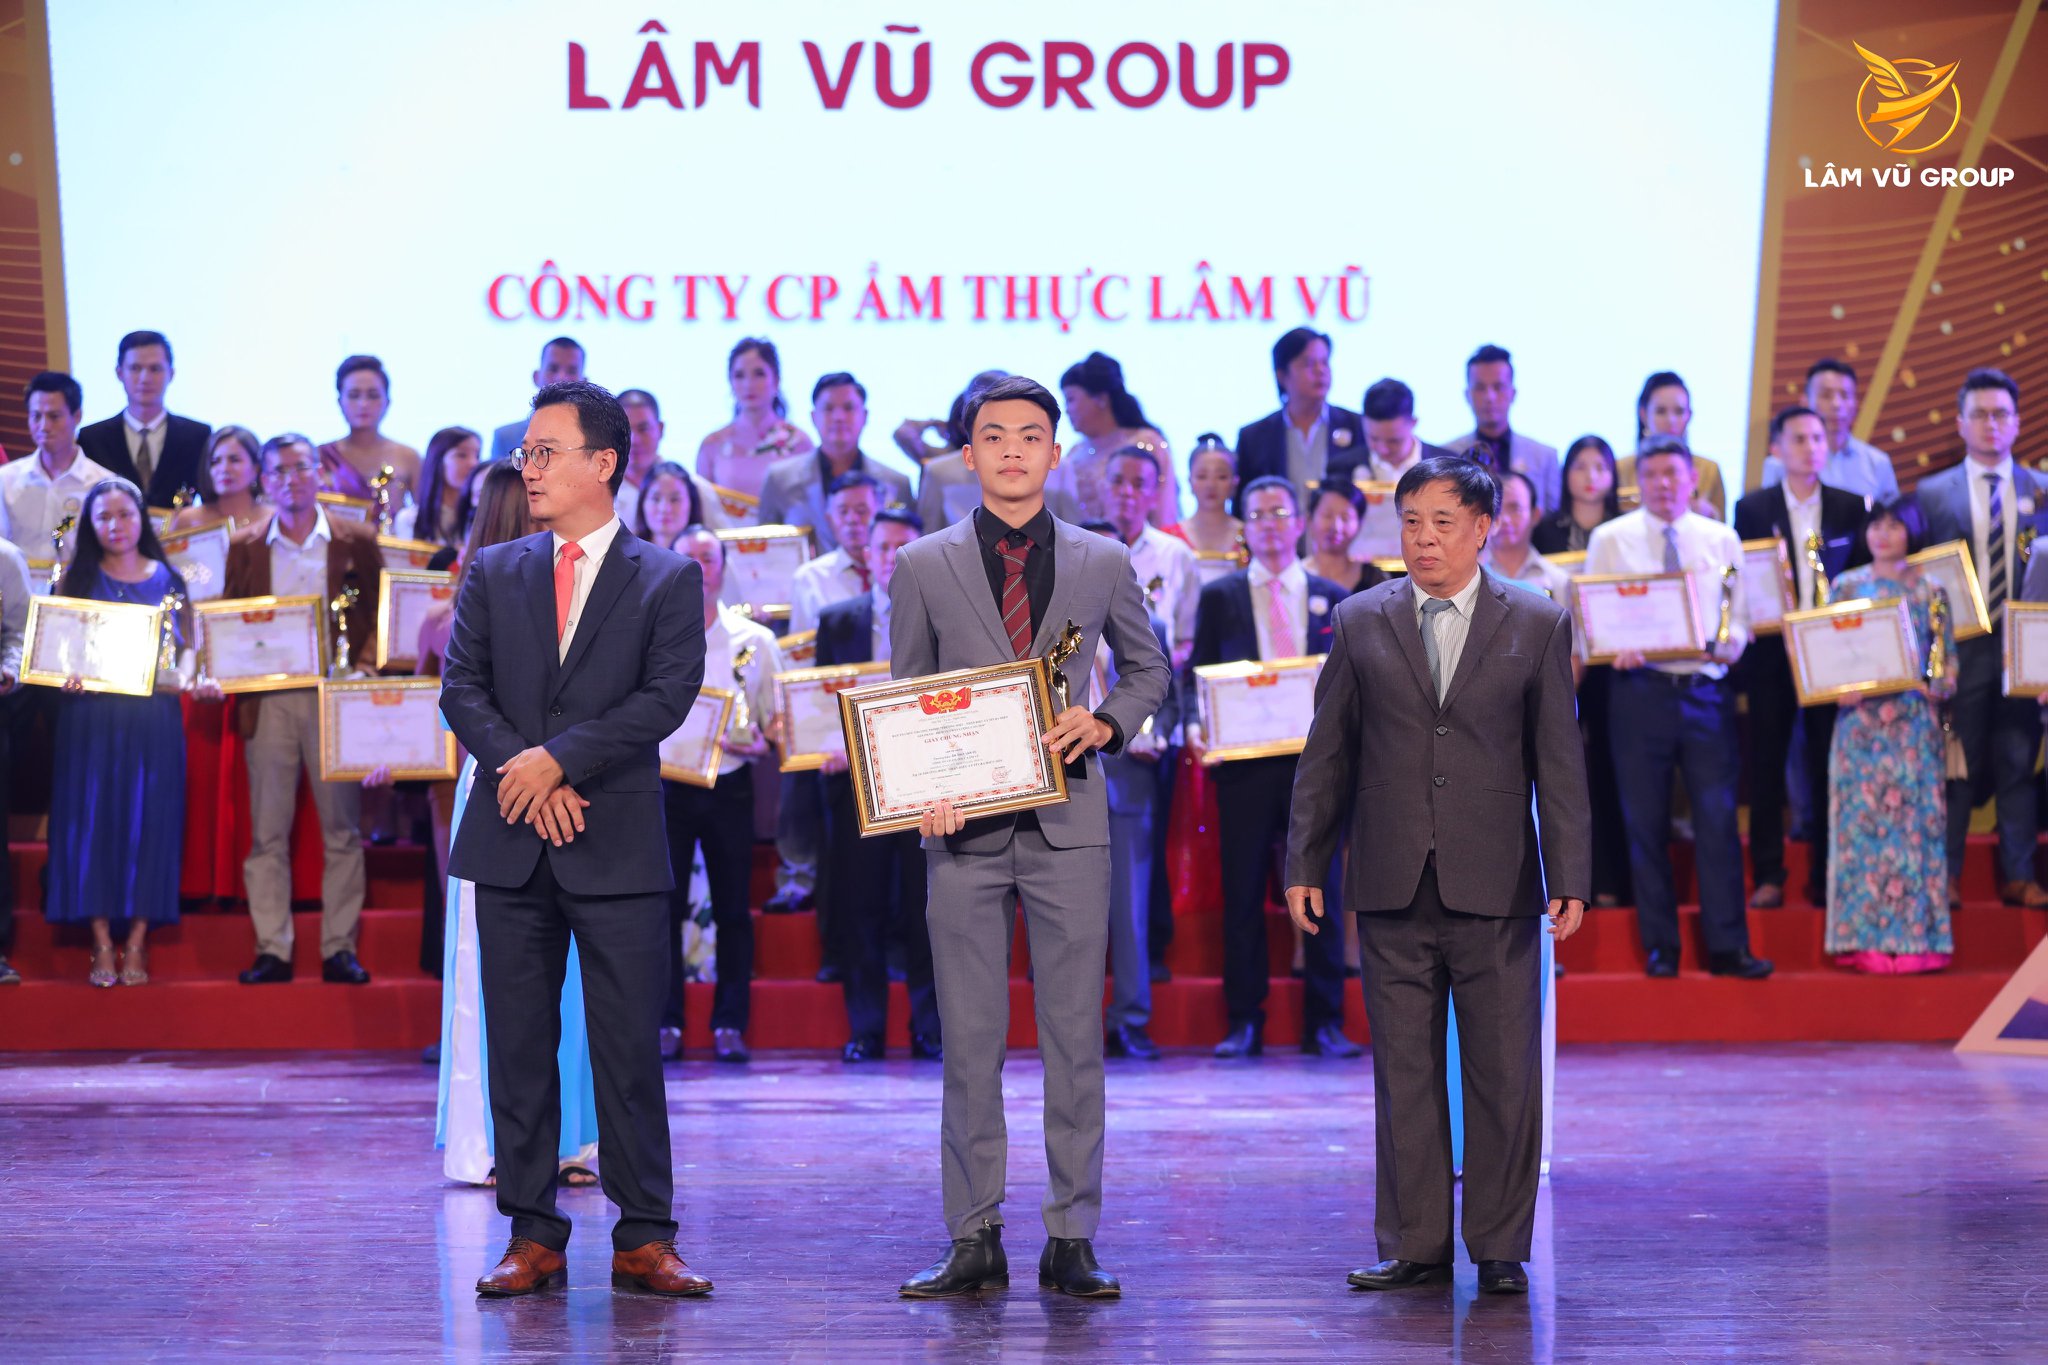 danh hiệu Hệ thống Nhượng Quyền Ẩm Thực Lâm Vũ (Lâm Vũ Group), lam vu group, lamvugroup